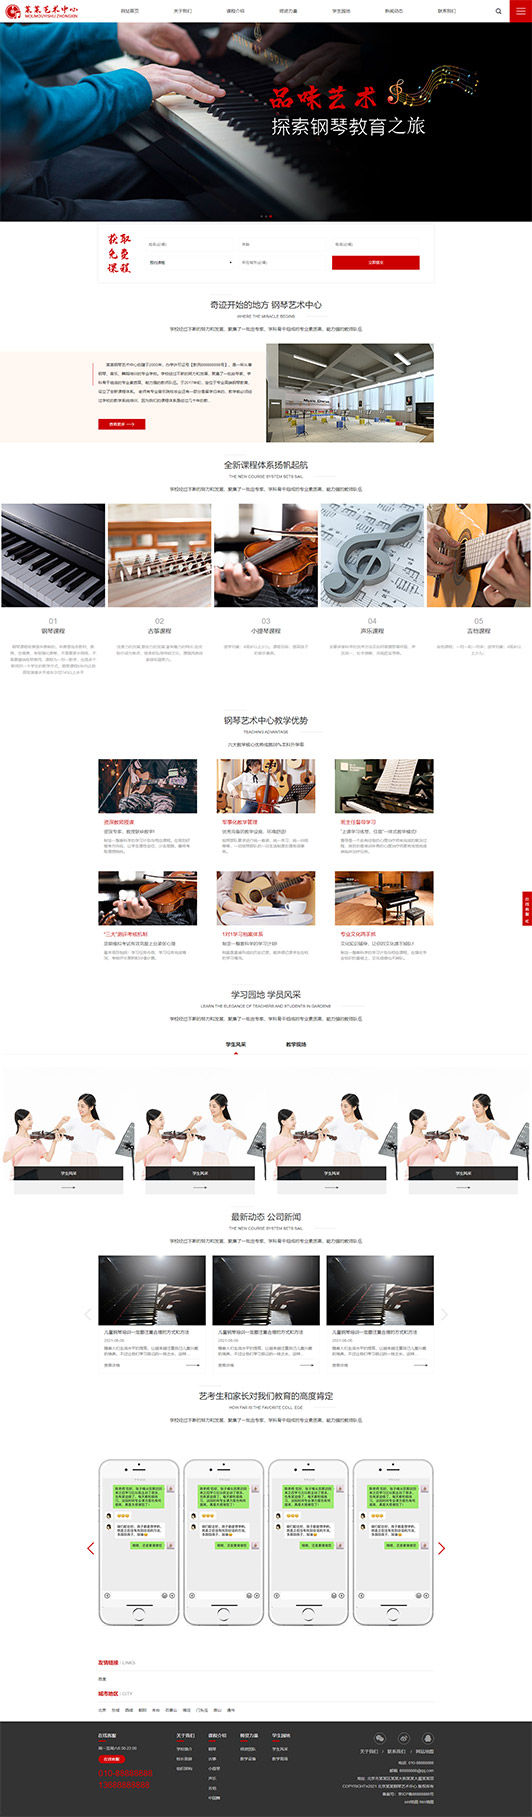 舟山钢琴艺术培训公司响应式企业网站